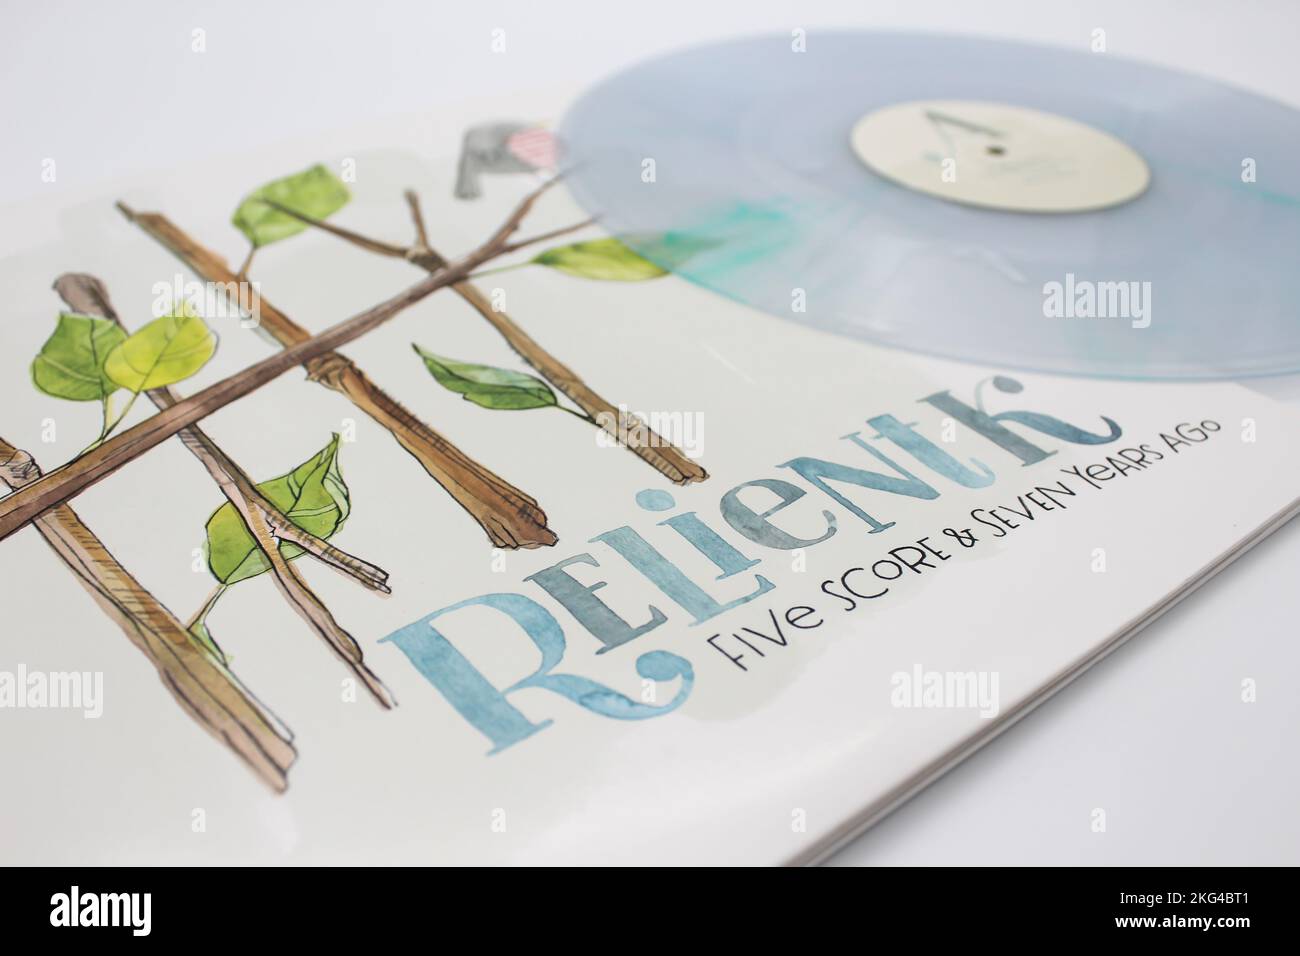 Five Score und Seven Years ago 10. Anniversary Musikalbum auf LP Vinyl Disc von der christlichen Band Relient K. Album Cover Stockfoto